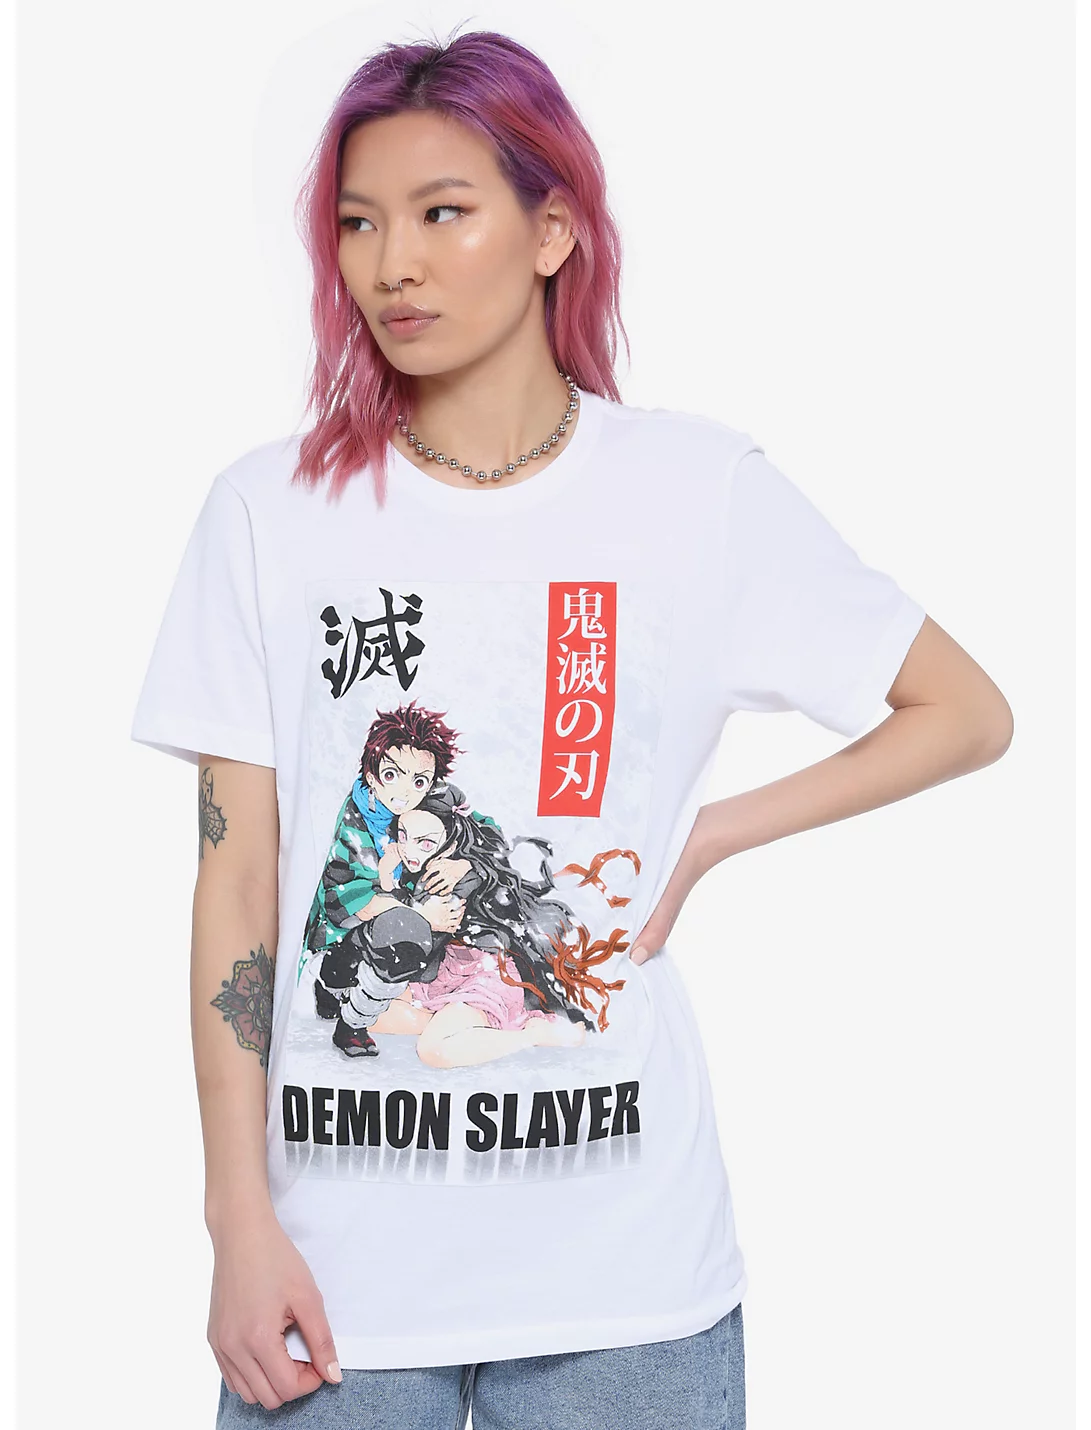 Demon Slayer Sweatshirt